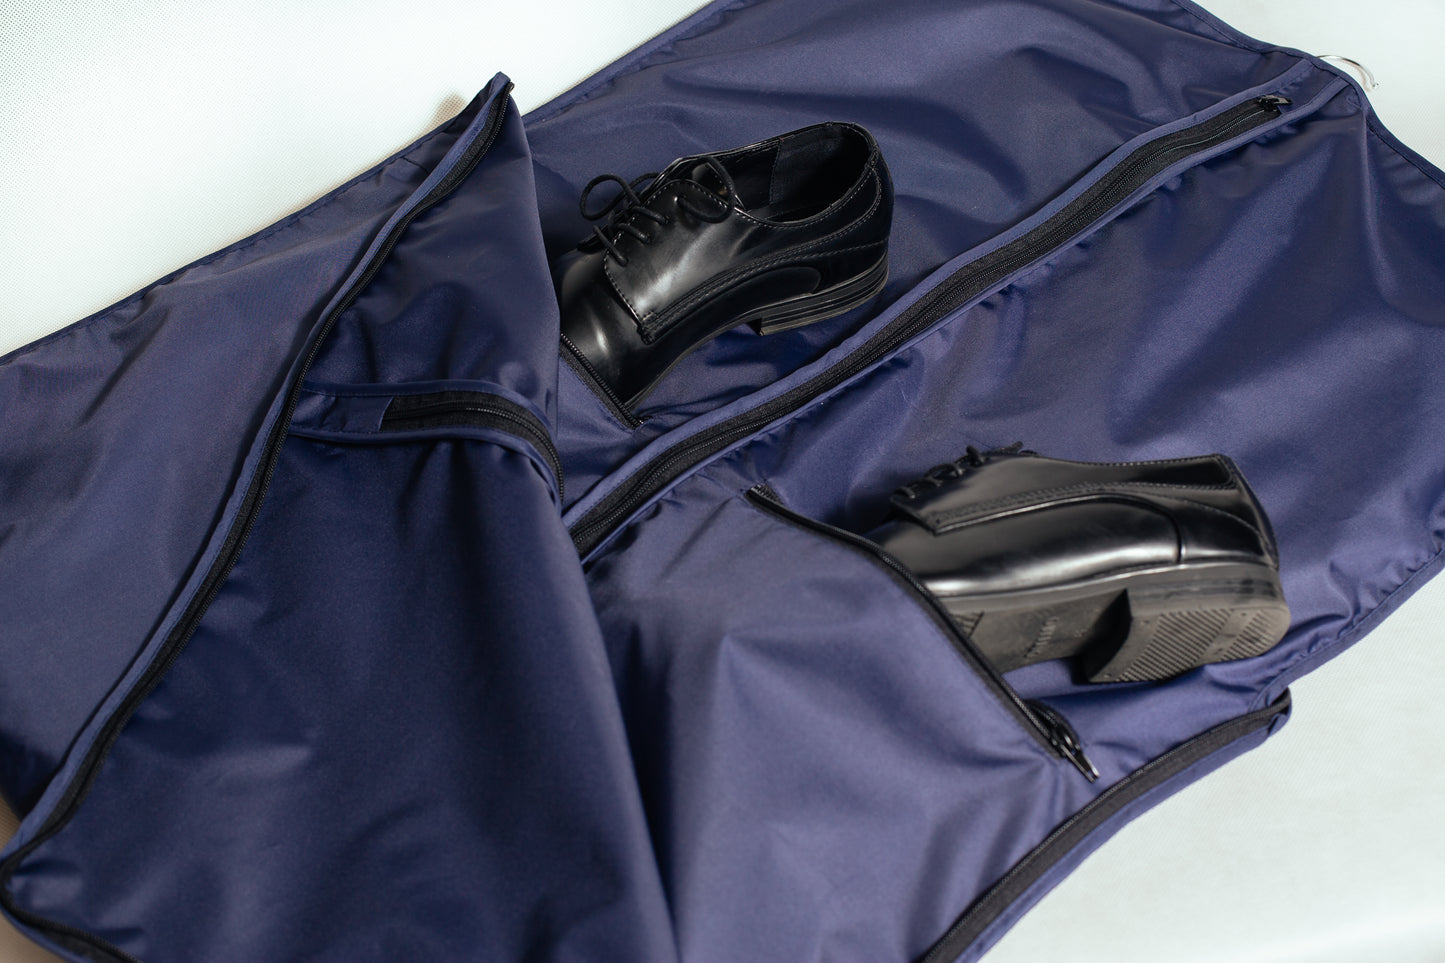 Navy blue BUSINESS suit bag